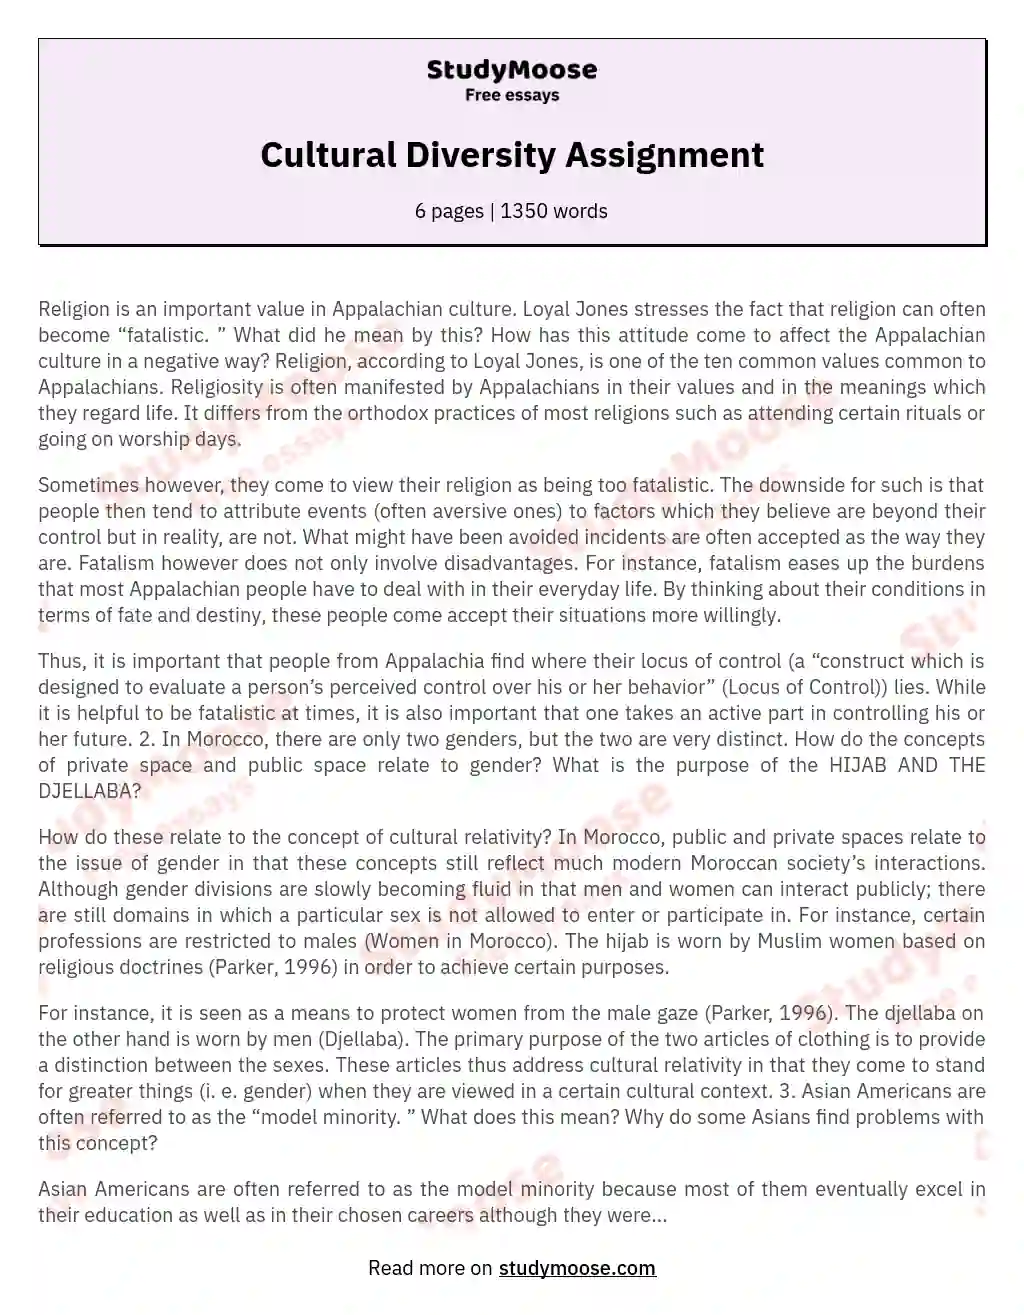 Cultural Diversity Assignment essay